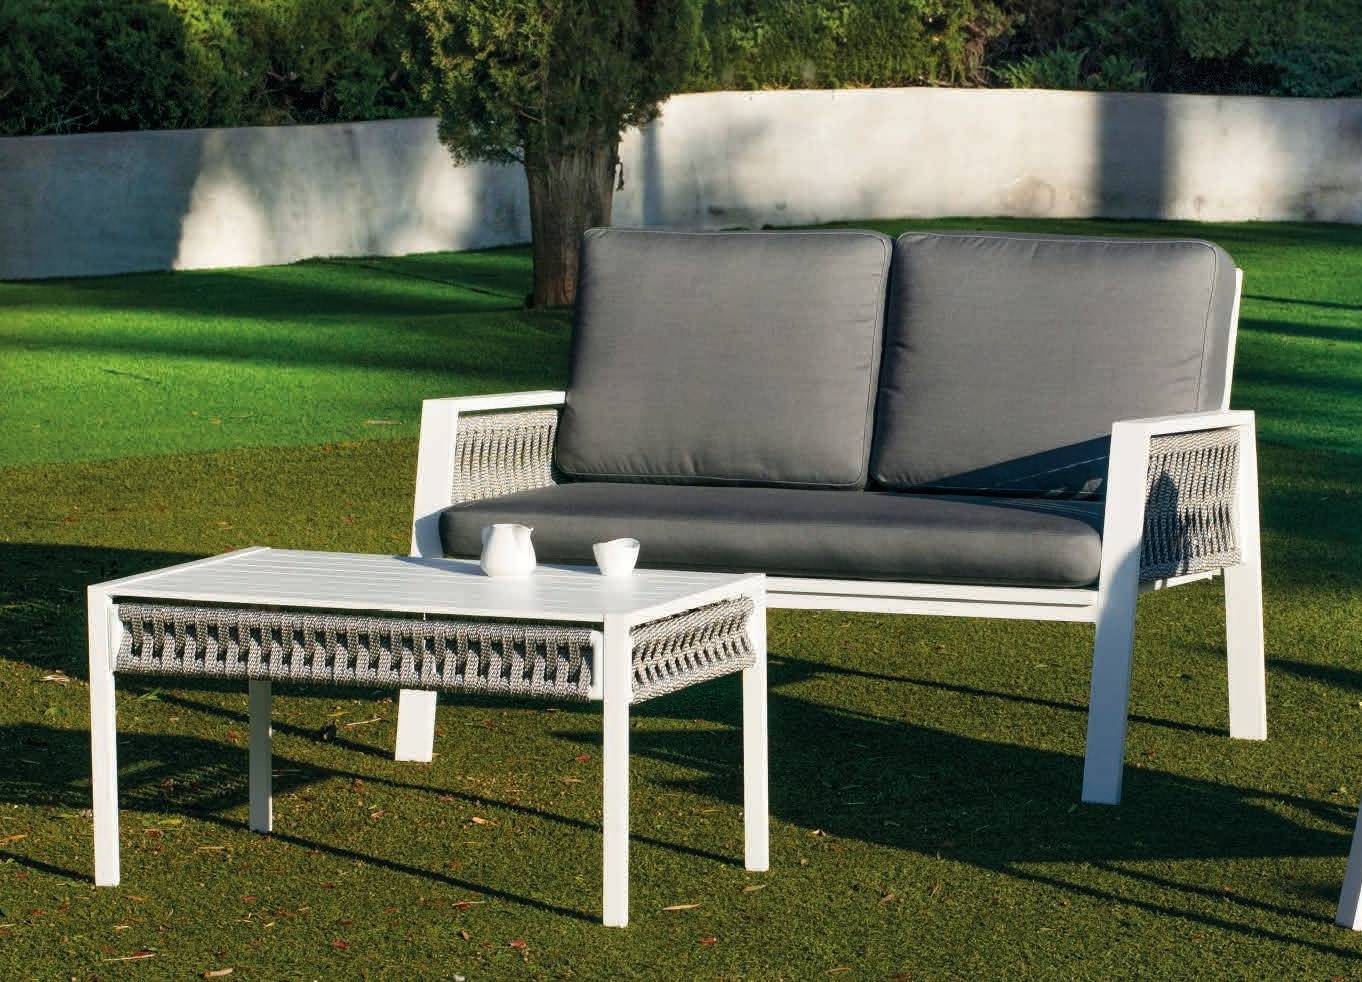 Sofá relax 2 plazas con cojines desenfundables. Estructura de aluminio recubierta de cuerda. En color blanco, gris, marrón o champagne.